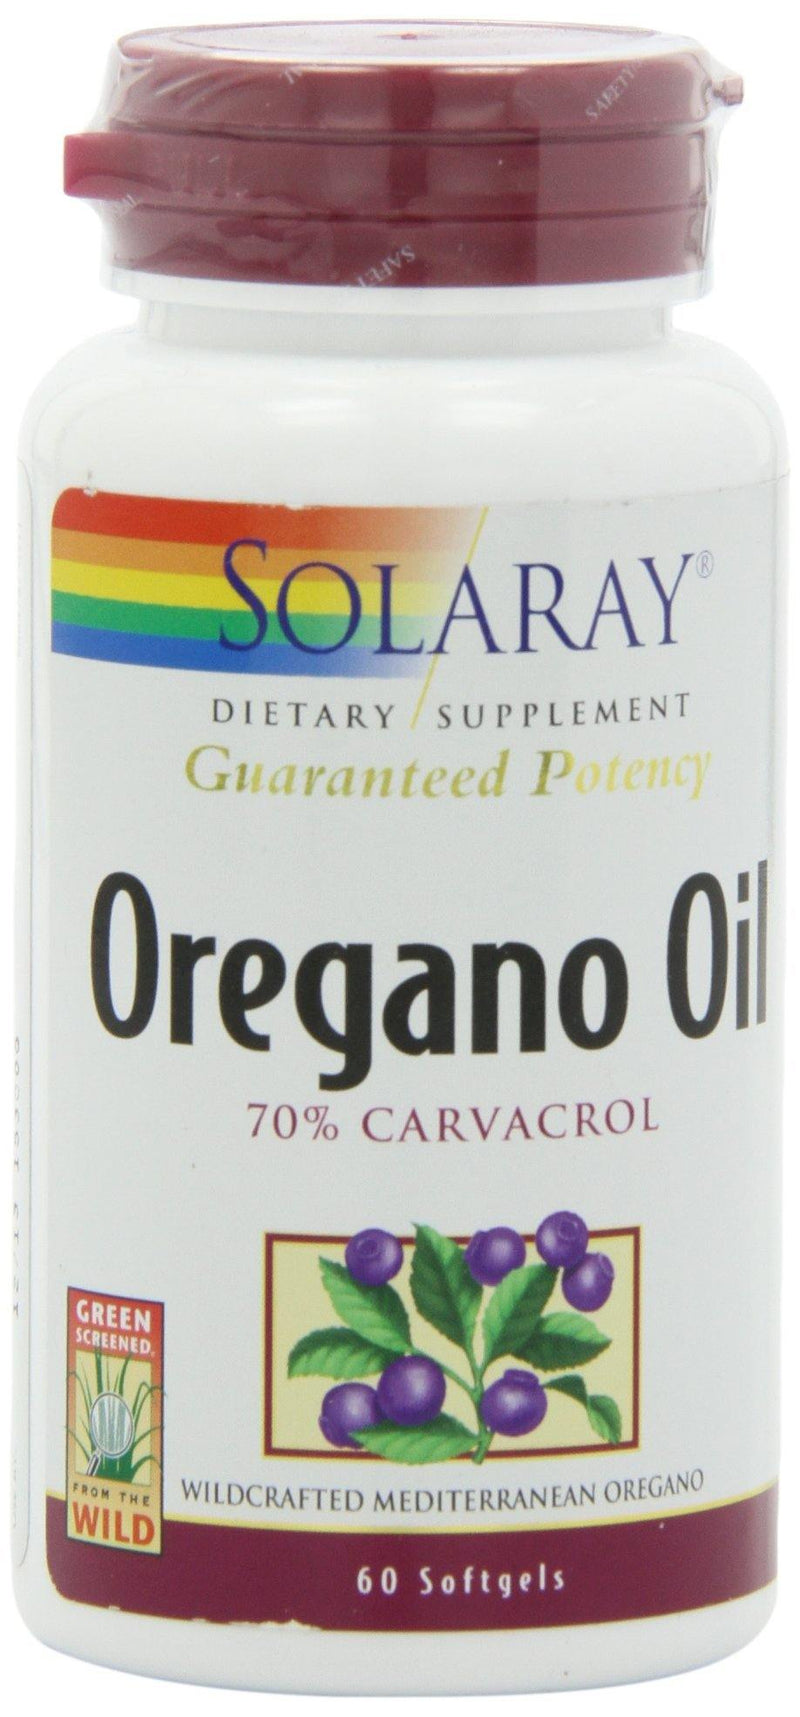 Solaray Oregano Oil 70% Carvacrol Supplement, 60 Count - Vitamins Emporium